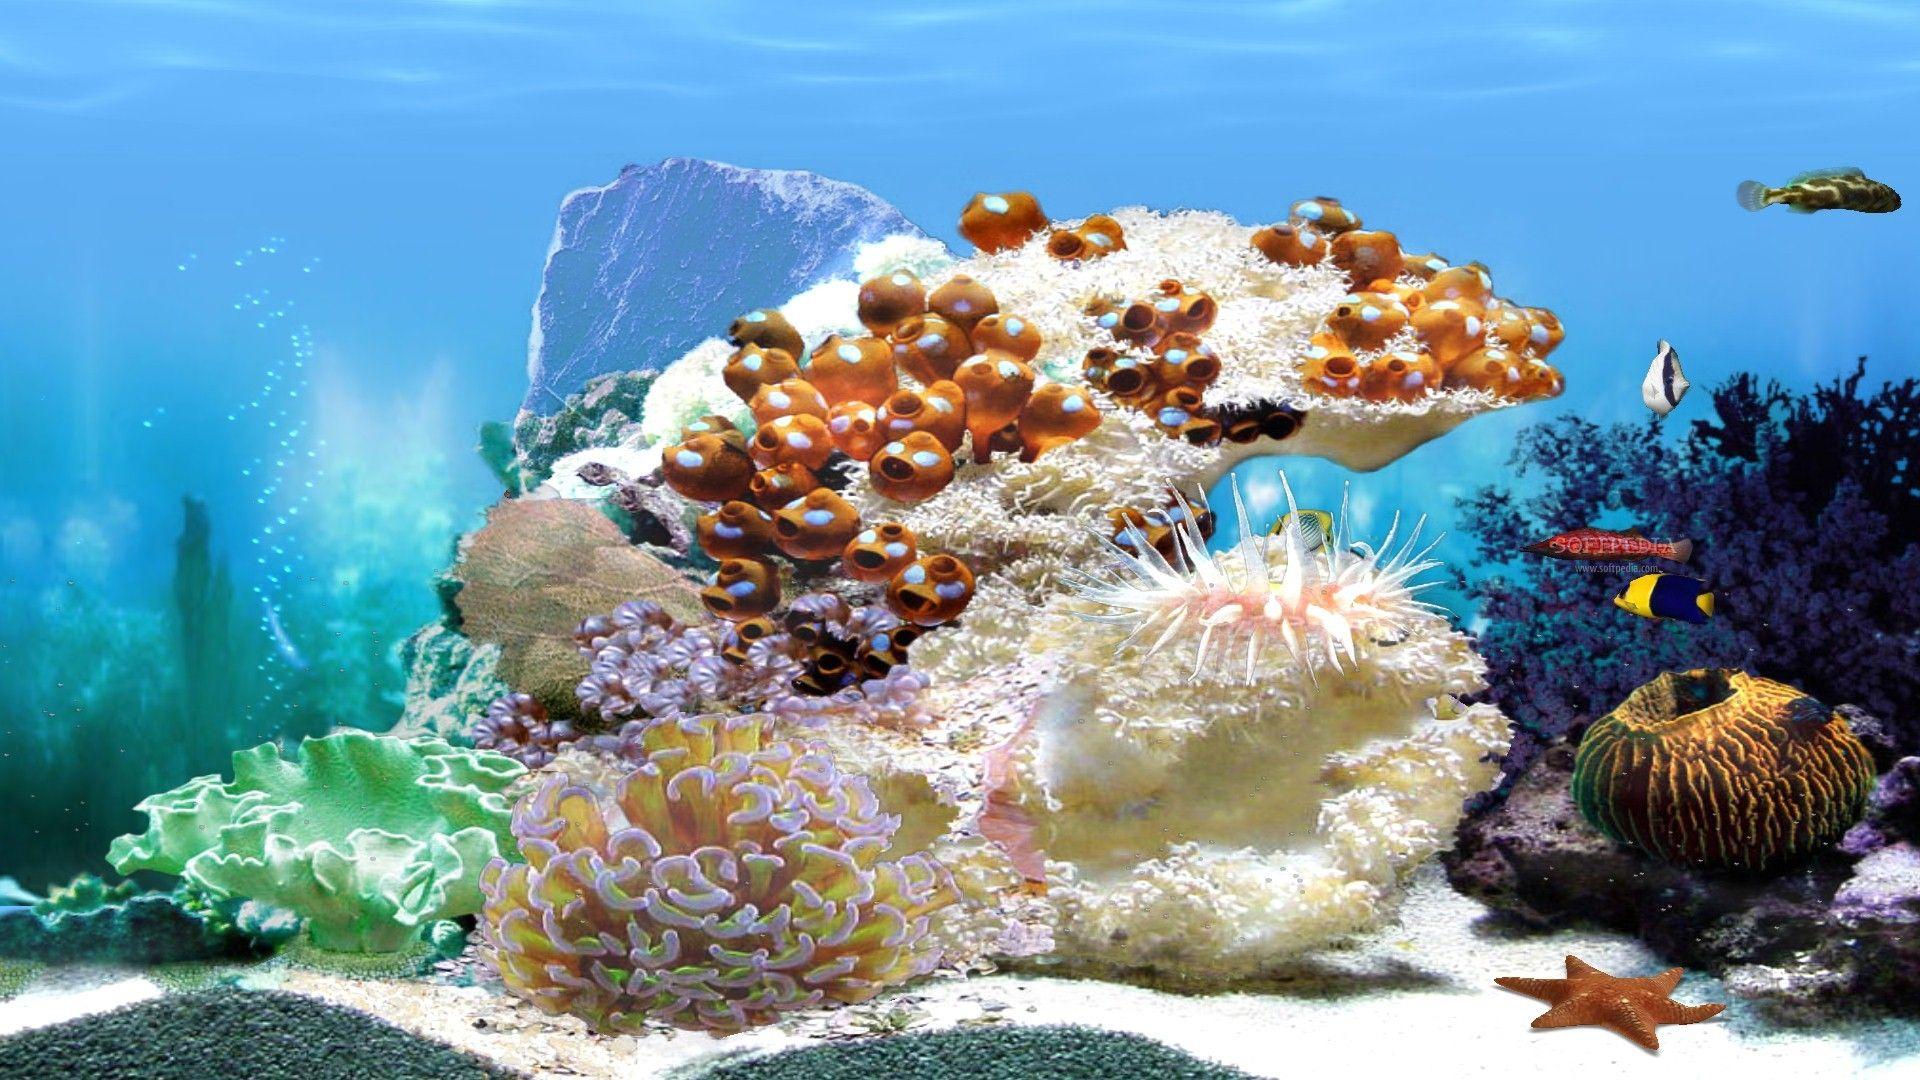 Coral Reef Aquarium 3d Animated Wallpaper Image Num 11